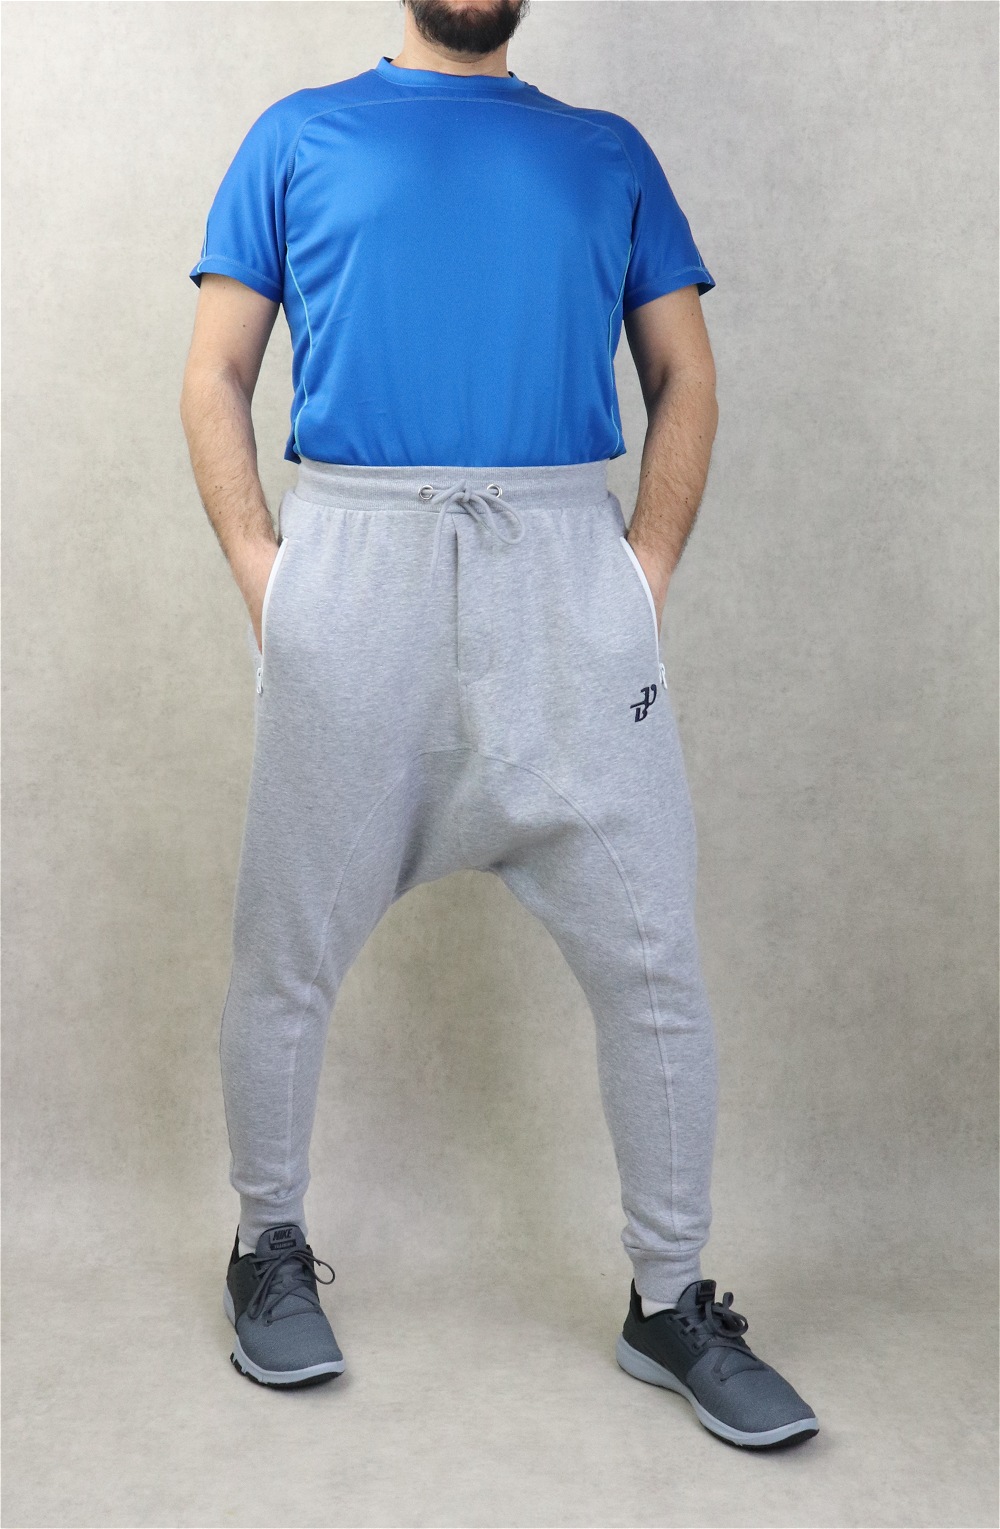 Pantalon jogging Sarouel léger poches zip blanches pour homme - Marque Best  Ummah - Couleur Gris clair chiné